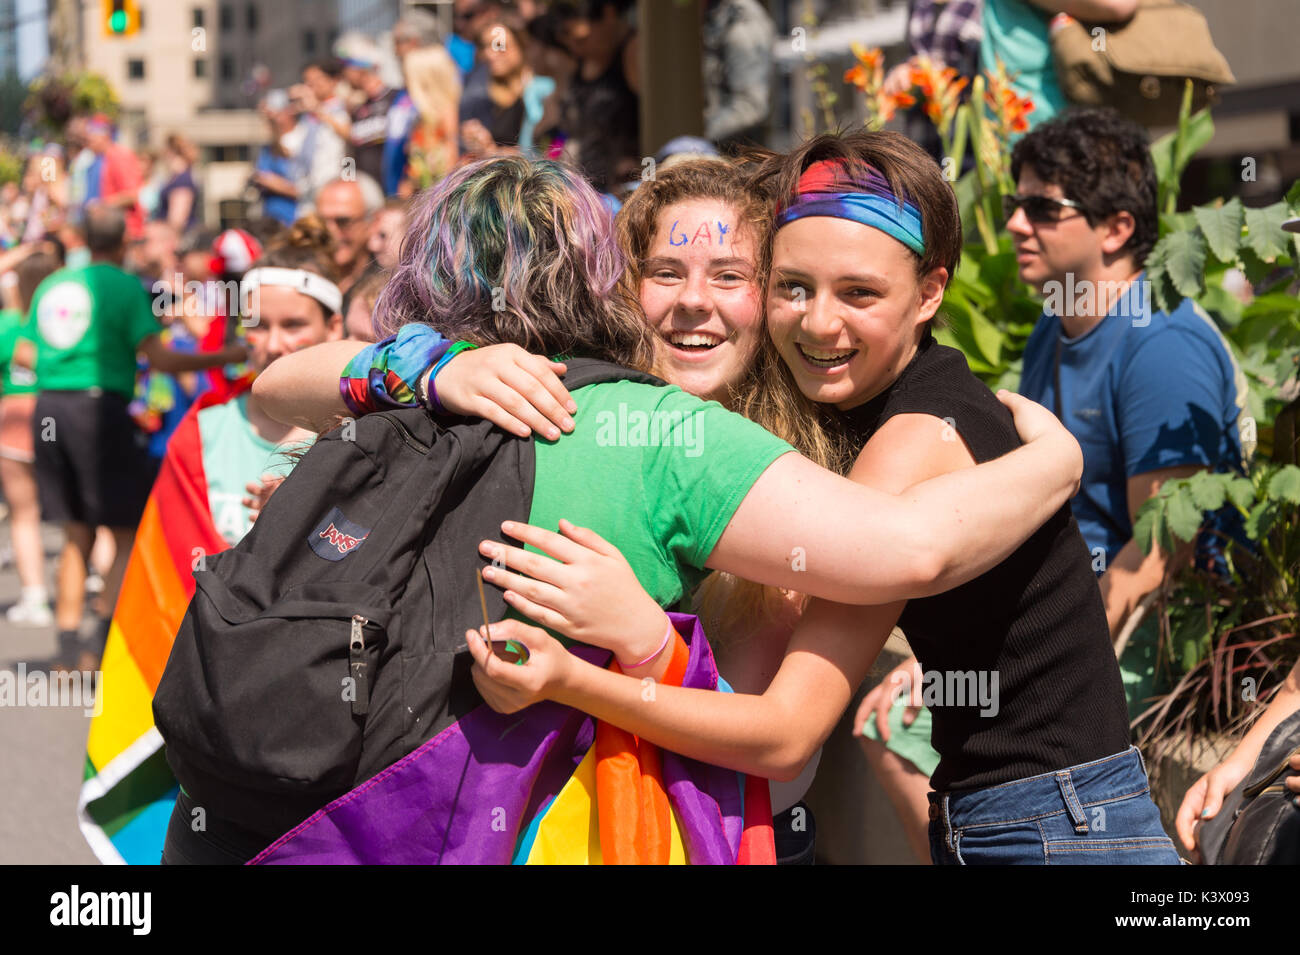 Montréal, Canada - 20 août 2017 : 3 personnes serrant les uns les autres à la parade de la Fierté gaie de Montréal Banque D'Images